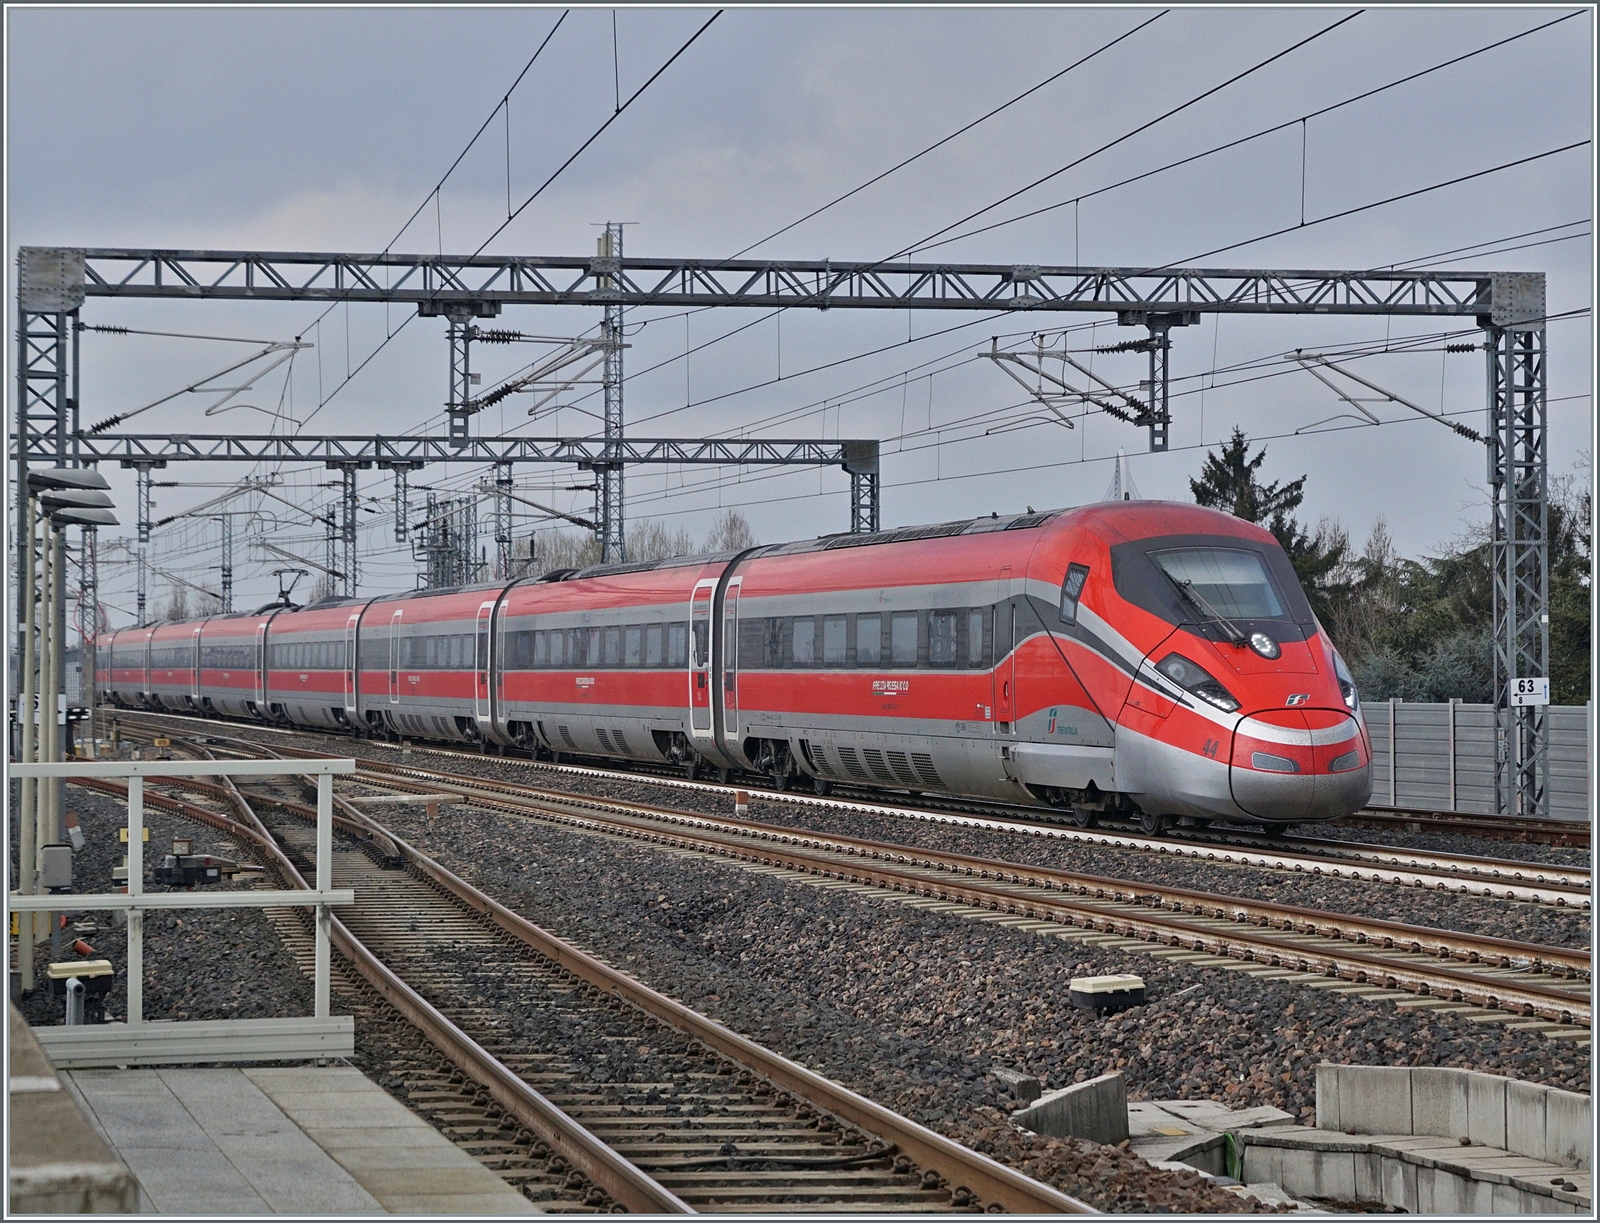 Der FS Trenitalia ETR 400 044 ist als  Frecciarossa 1000  FR 9623 von Milano Centrale nach Roma Termini unterwegs und fährt mit einer beachtlichen Geschwindigkeit durch den Bahnhof von Reggio Emilia AV.
Somit ist mein 10000. Bild wohl auch mein  schnellstes  Bild bei bb.de 

14. März 2023